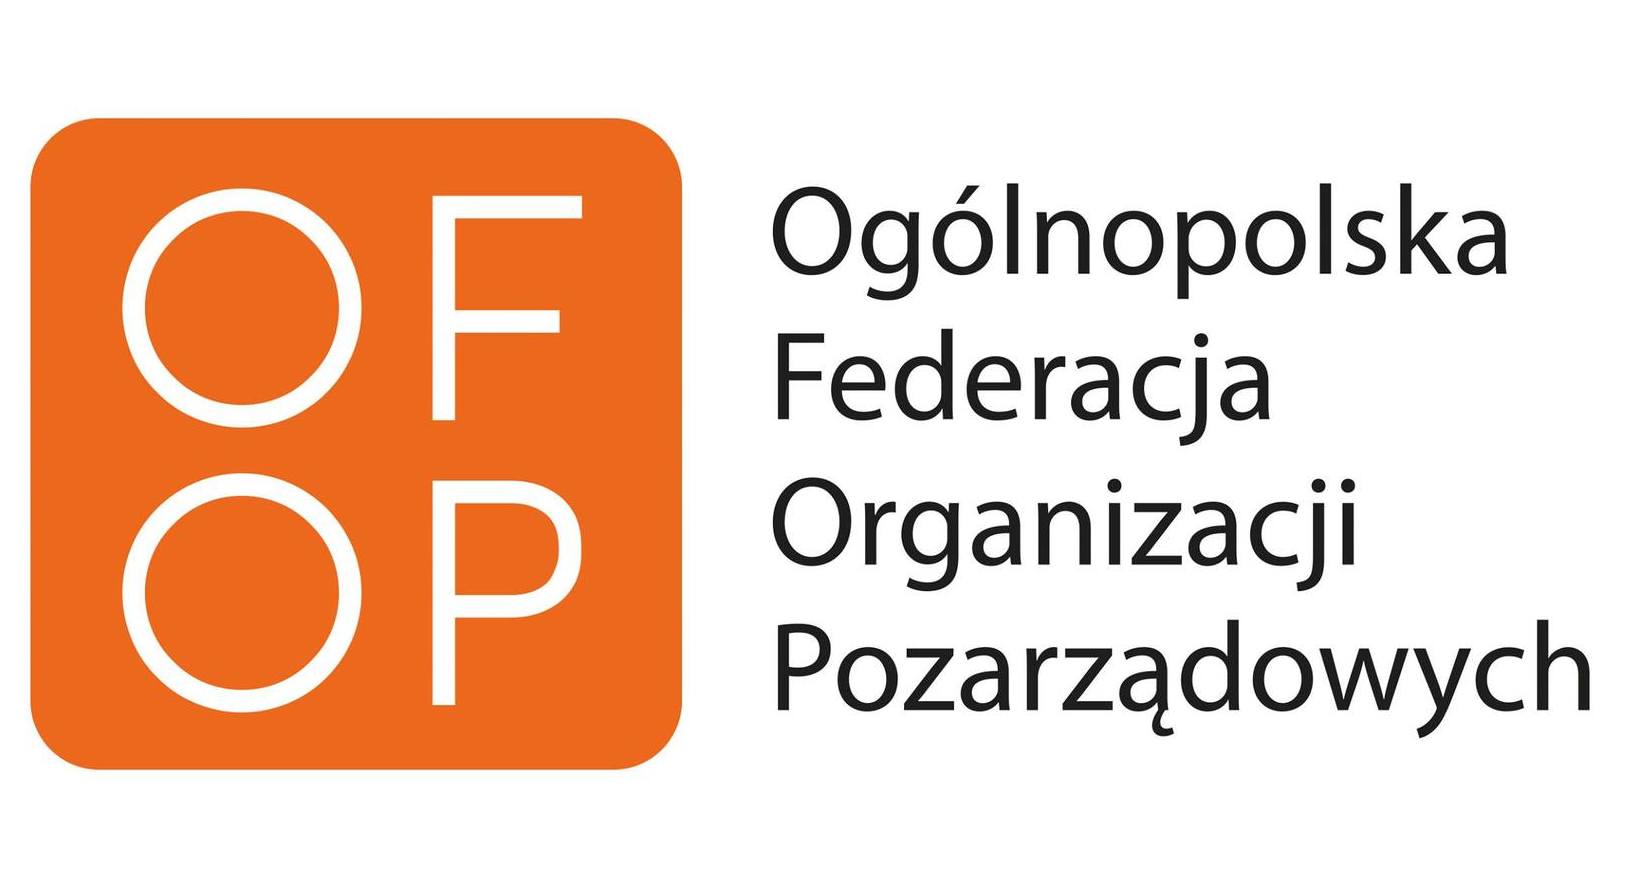 Logotyp zawierający nazwę organizacji